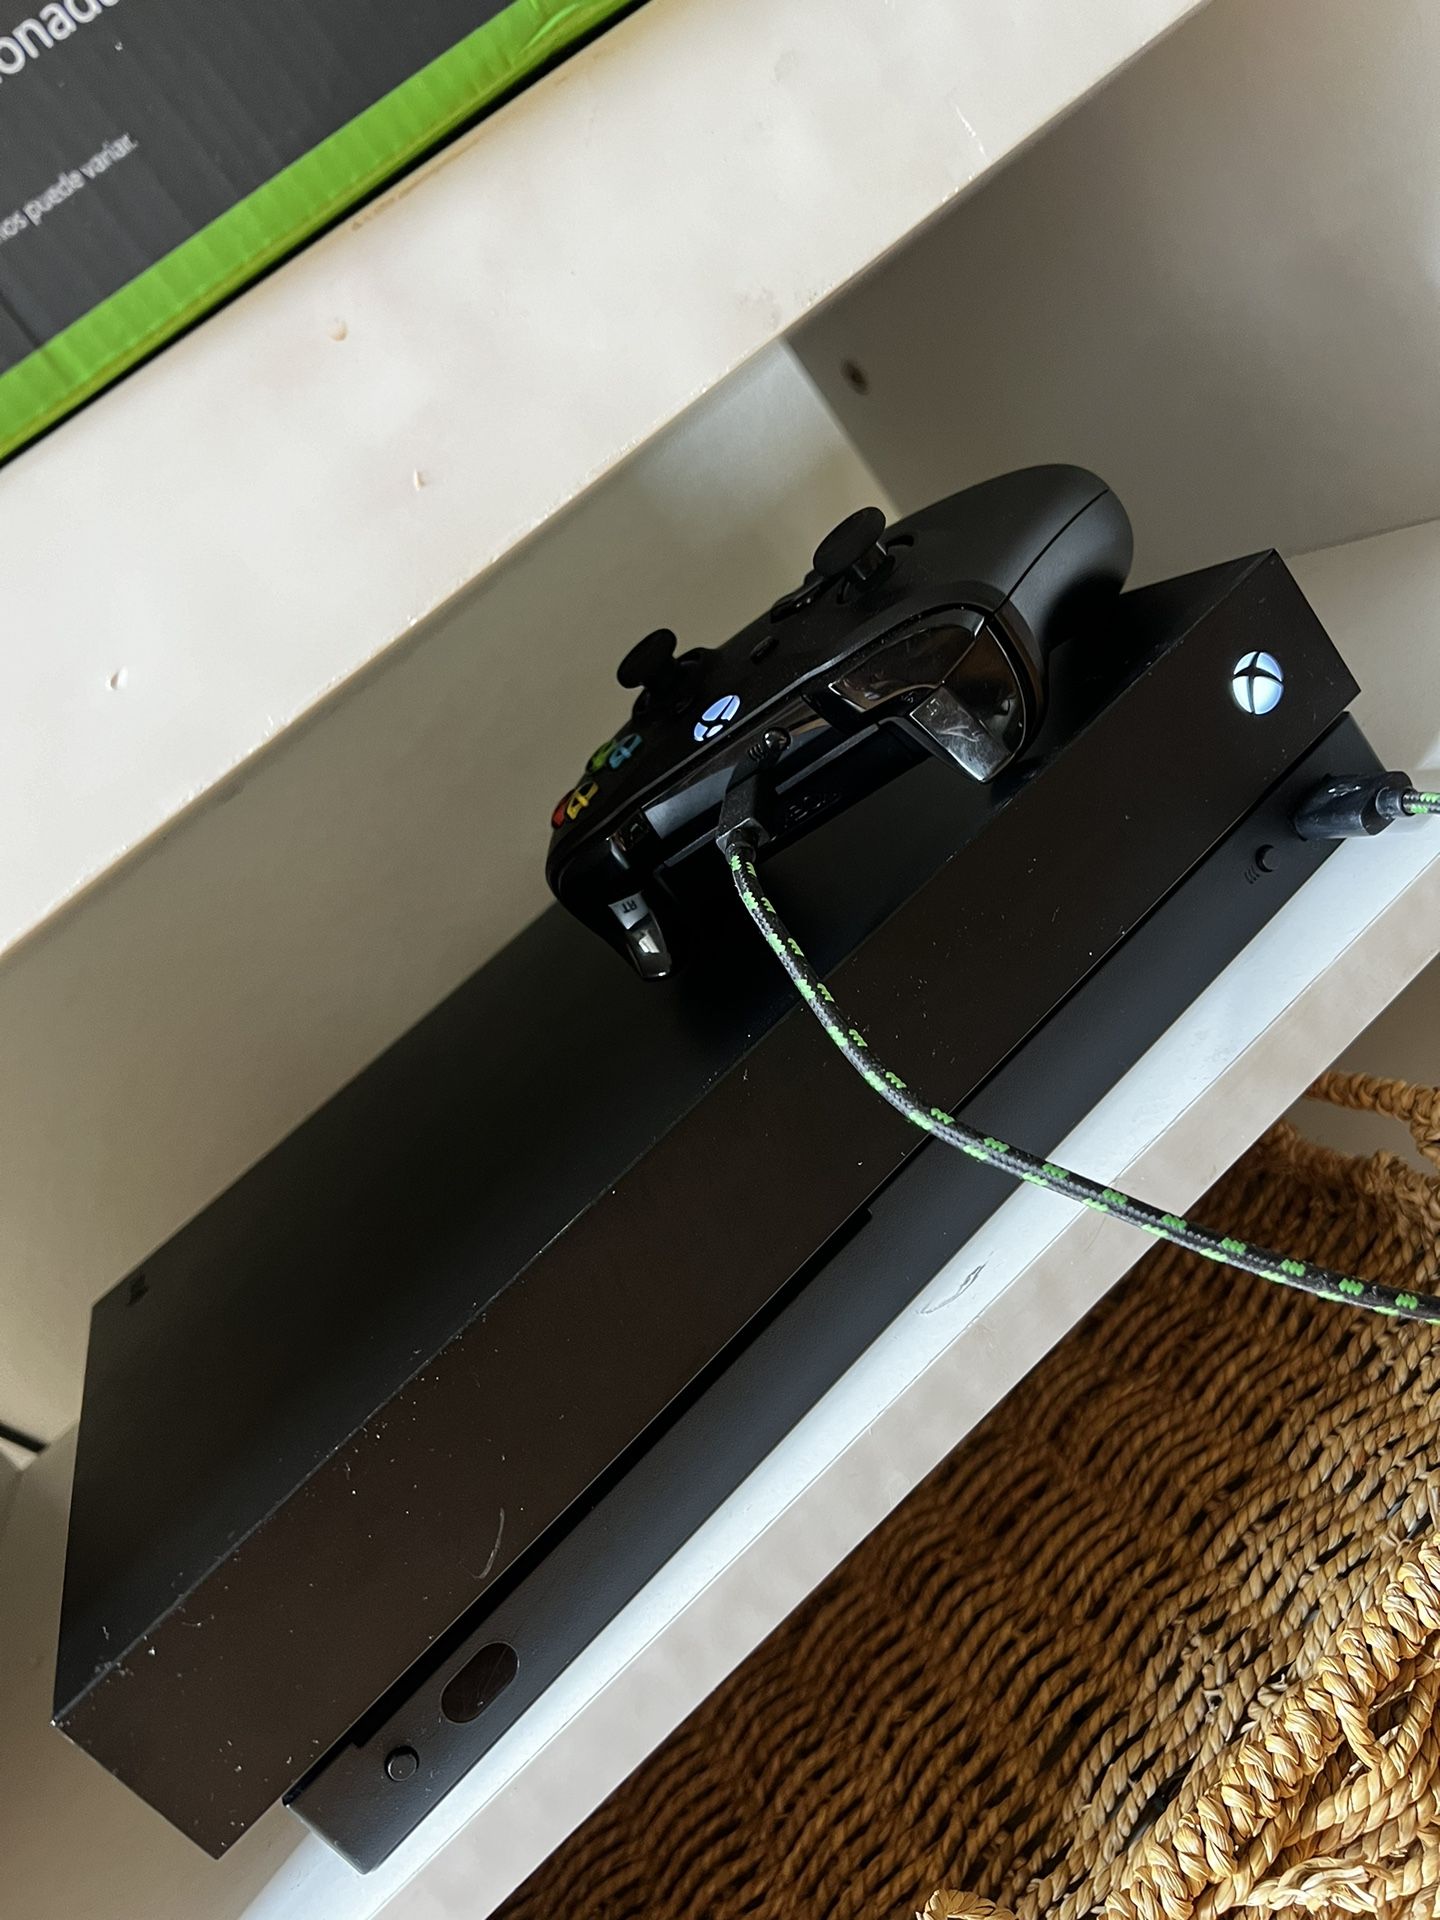 Xbox One X, black